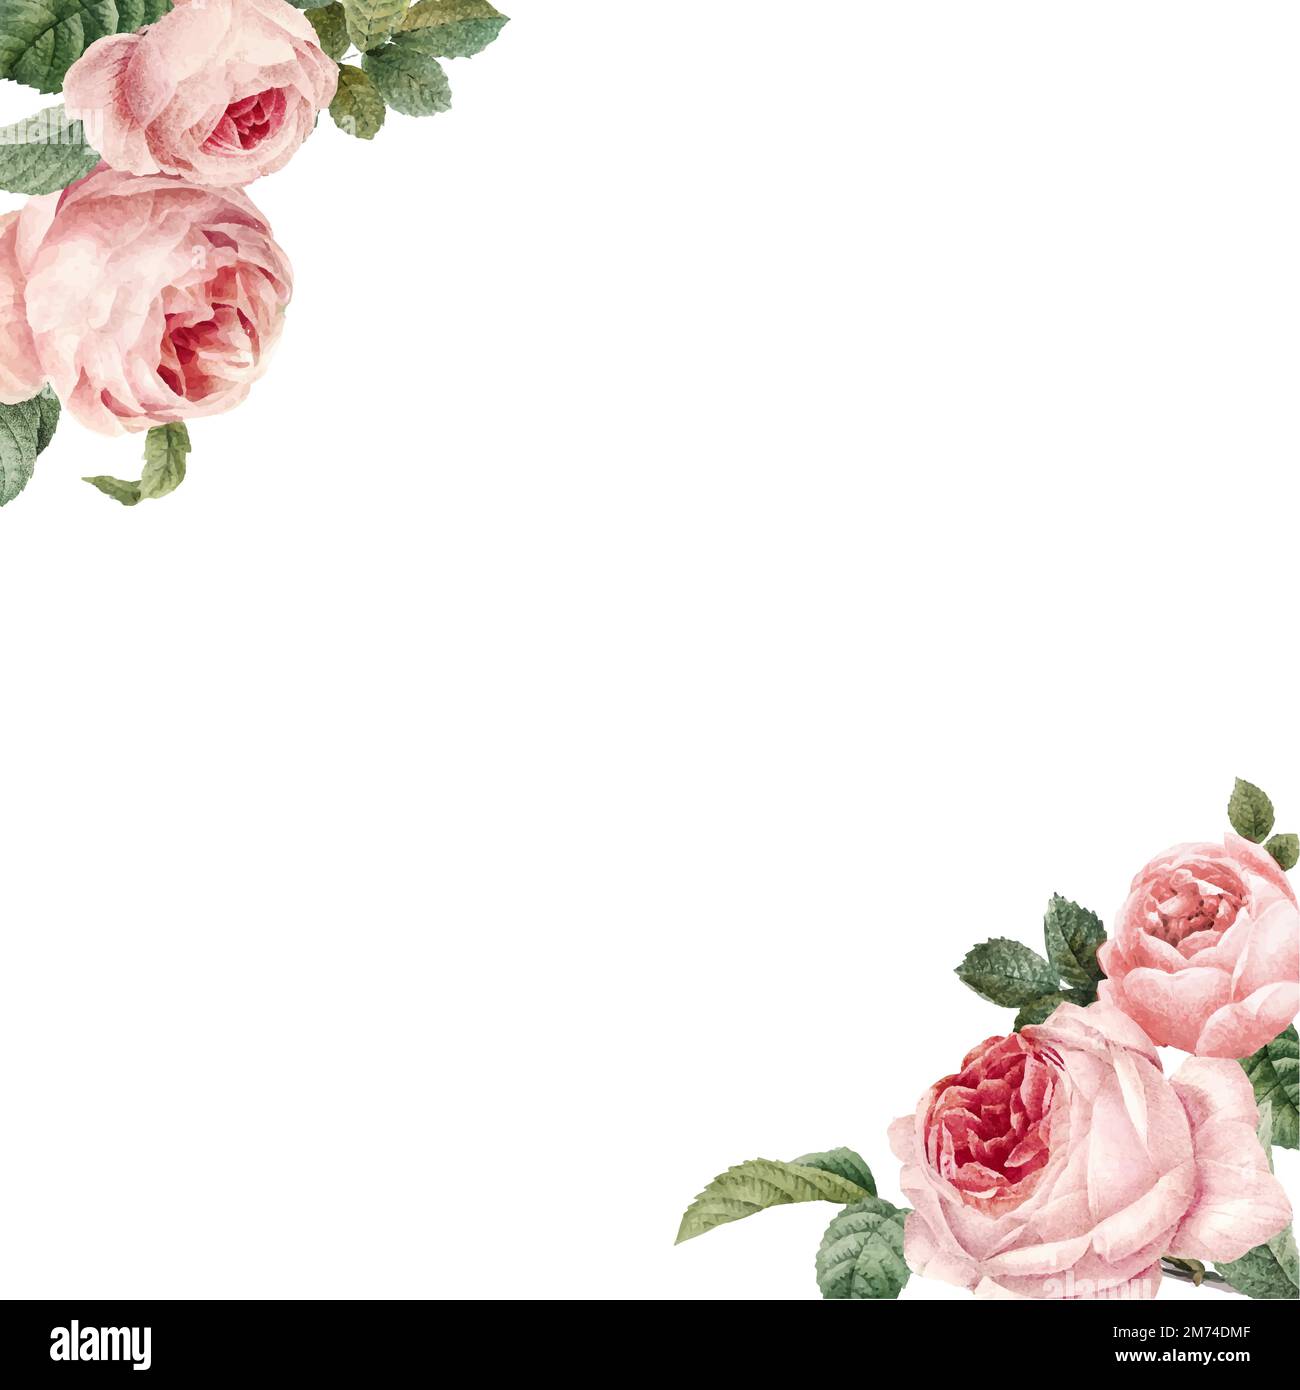 Handgezeichnete rosa Rosen Rahmen auf weißem Hintergrund Vektor Stock Vektor